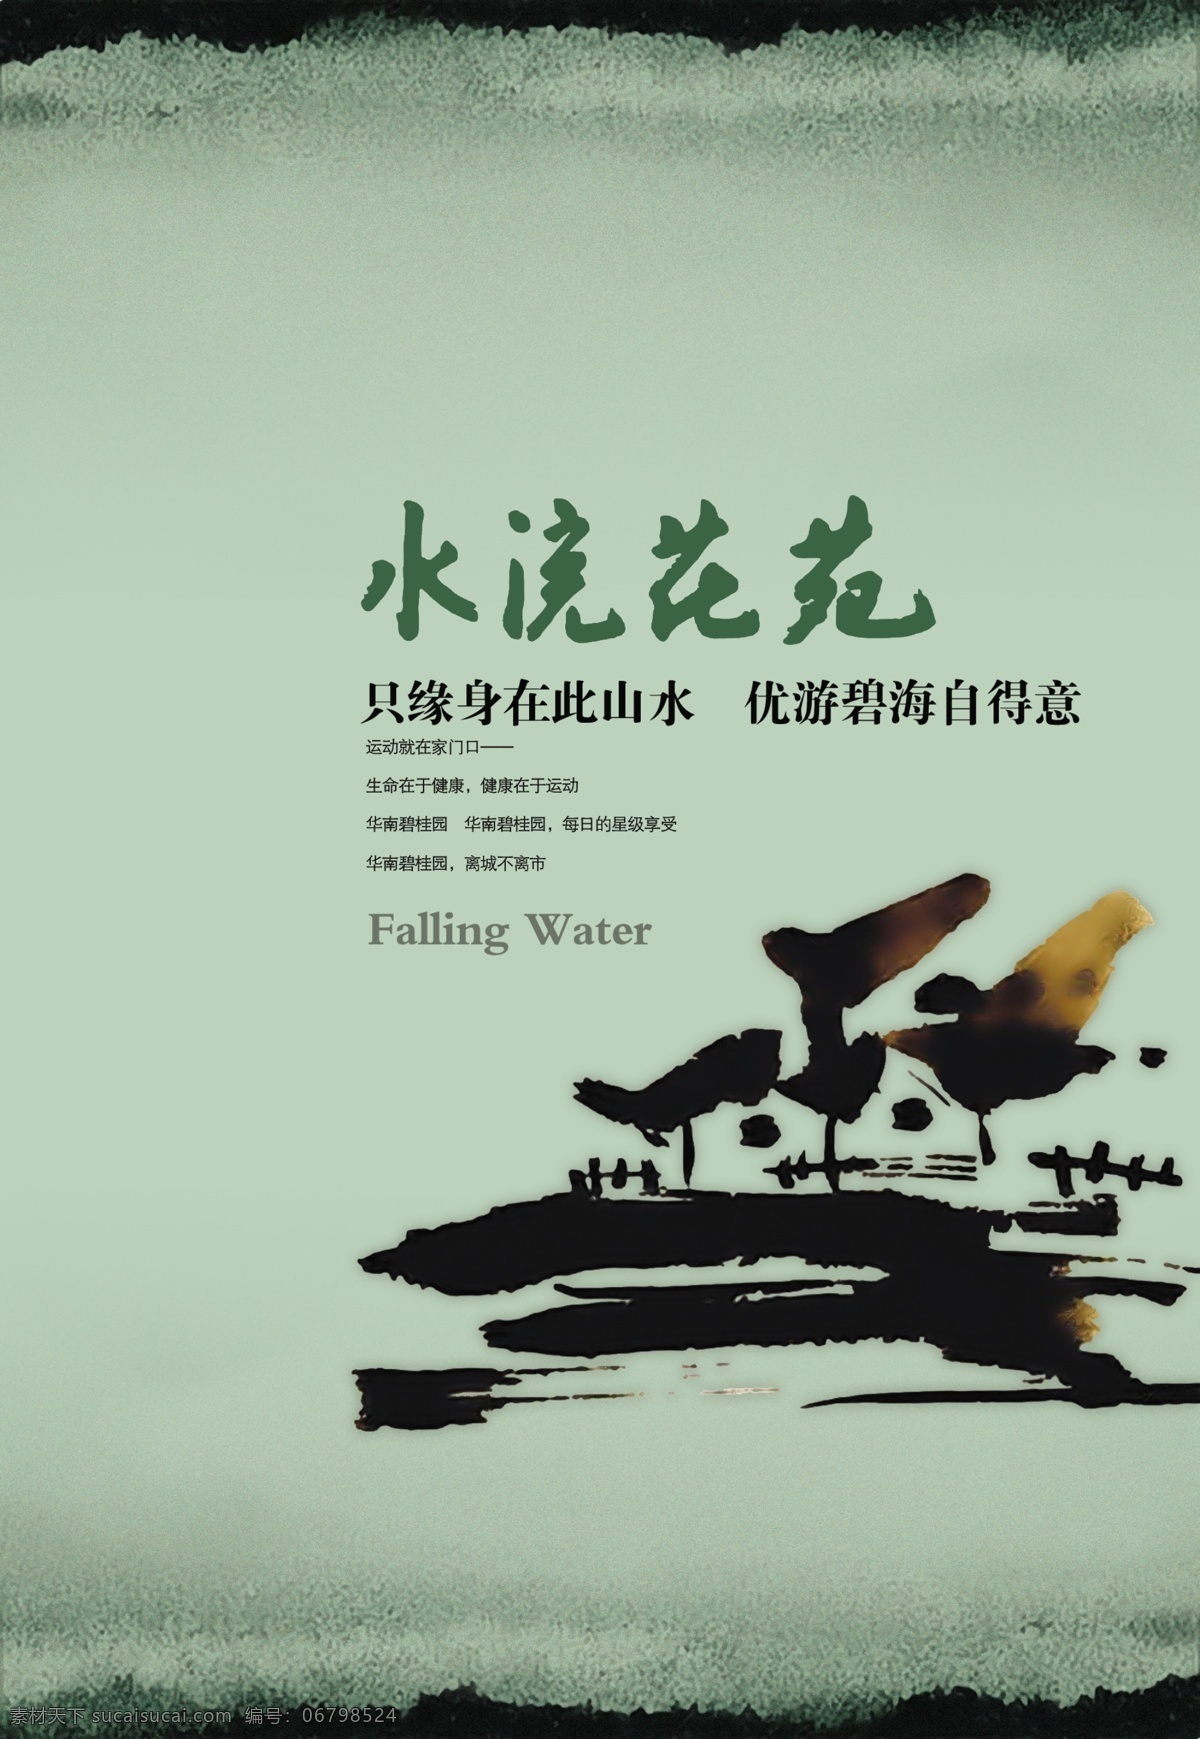 中国 风 水墨 风景 房子 文案 创意 海报 中国风 创意海报